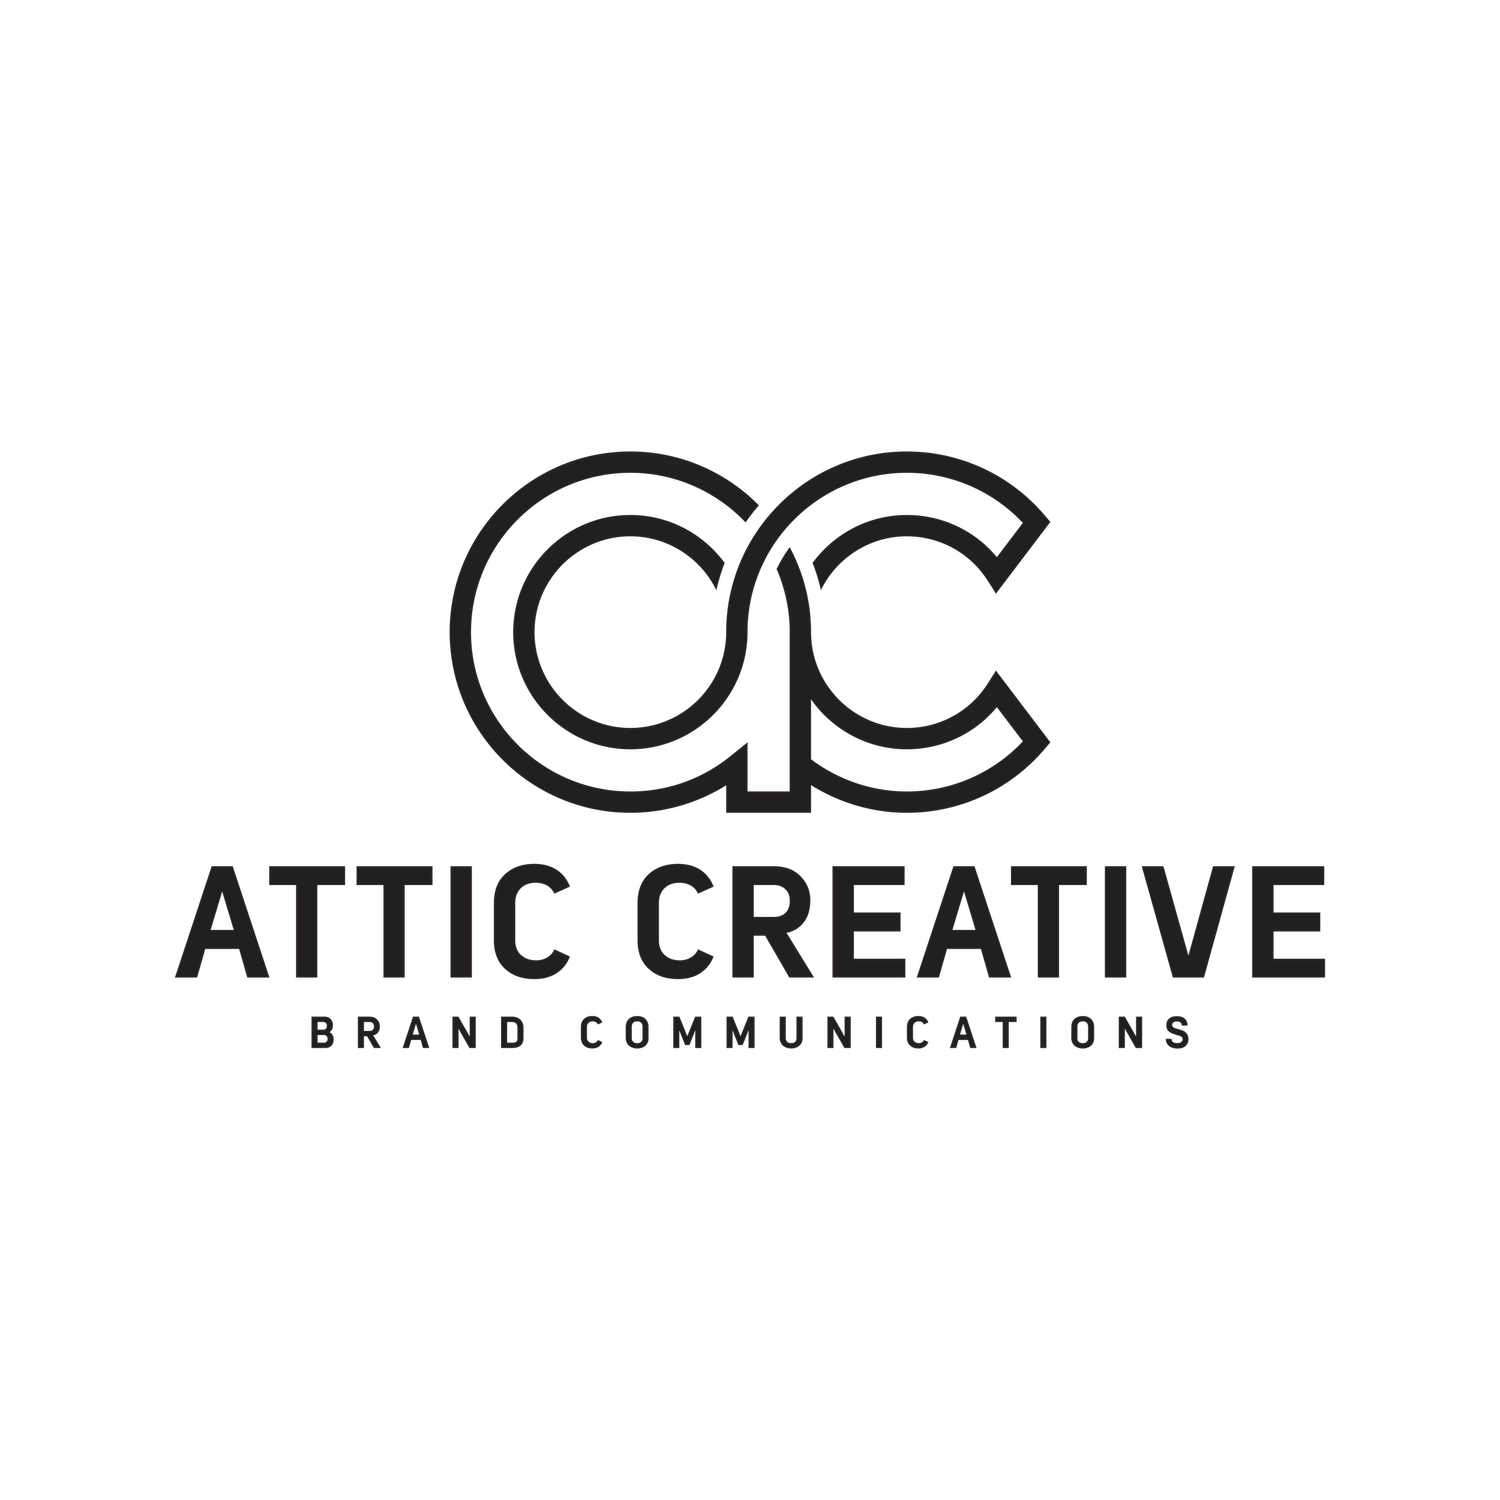 Attic Creative